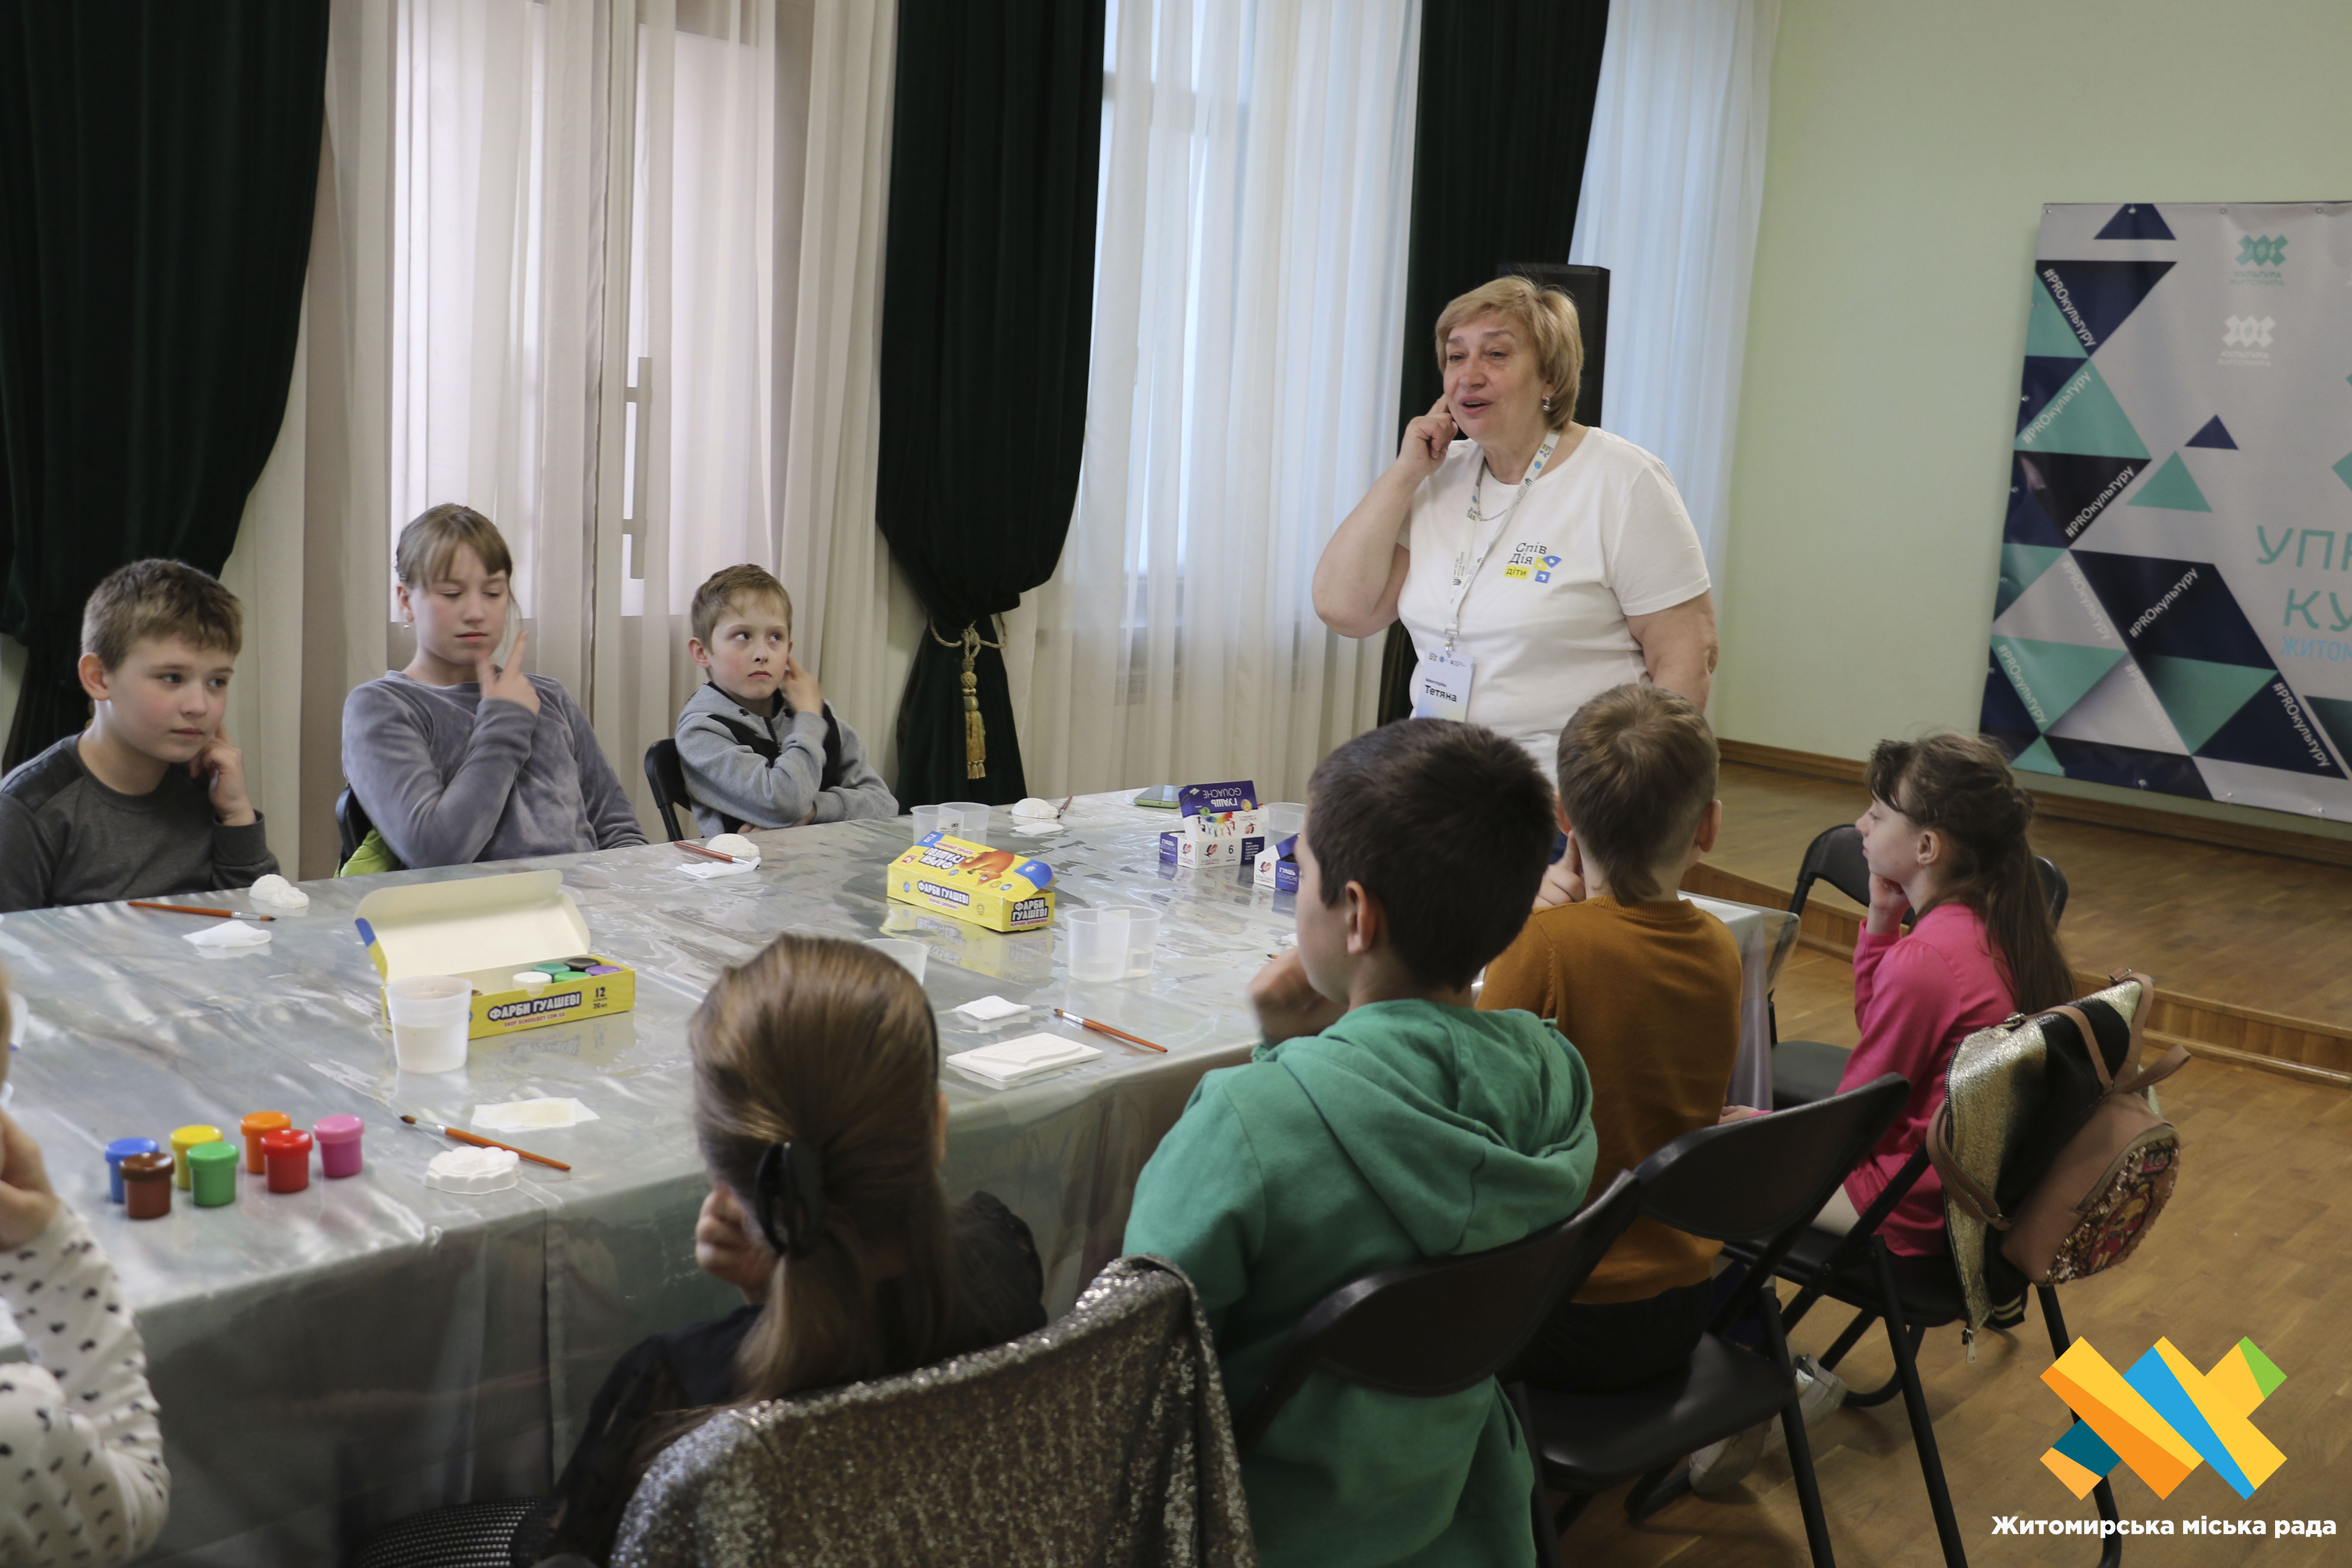 Лікування мистецтвом: в Домі української культури діти розписували гіпсові фігурки